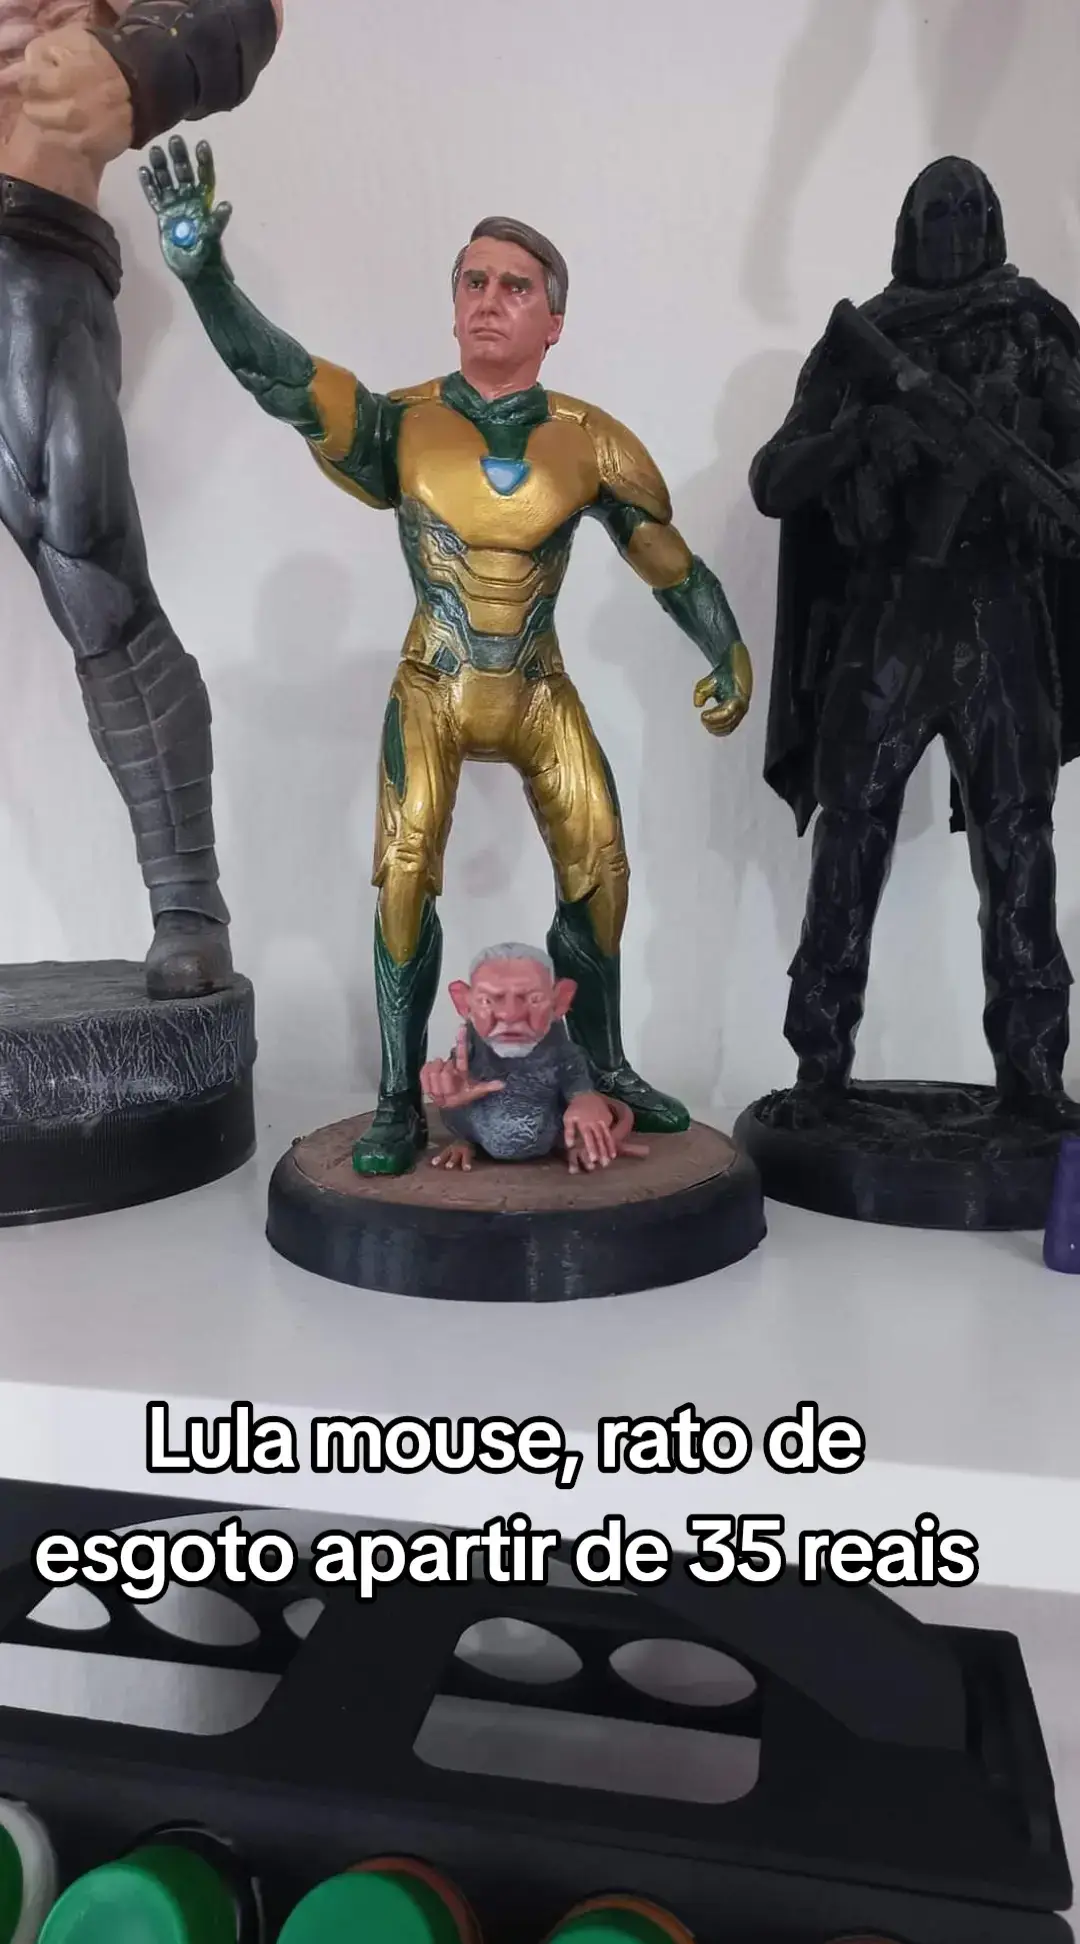 Lula mouse, rato de esgoto apartir de 35 reais